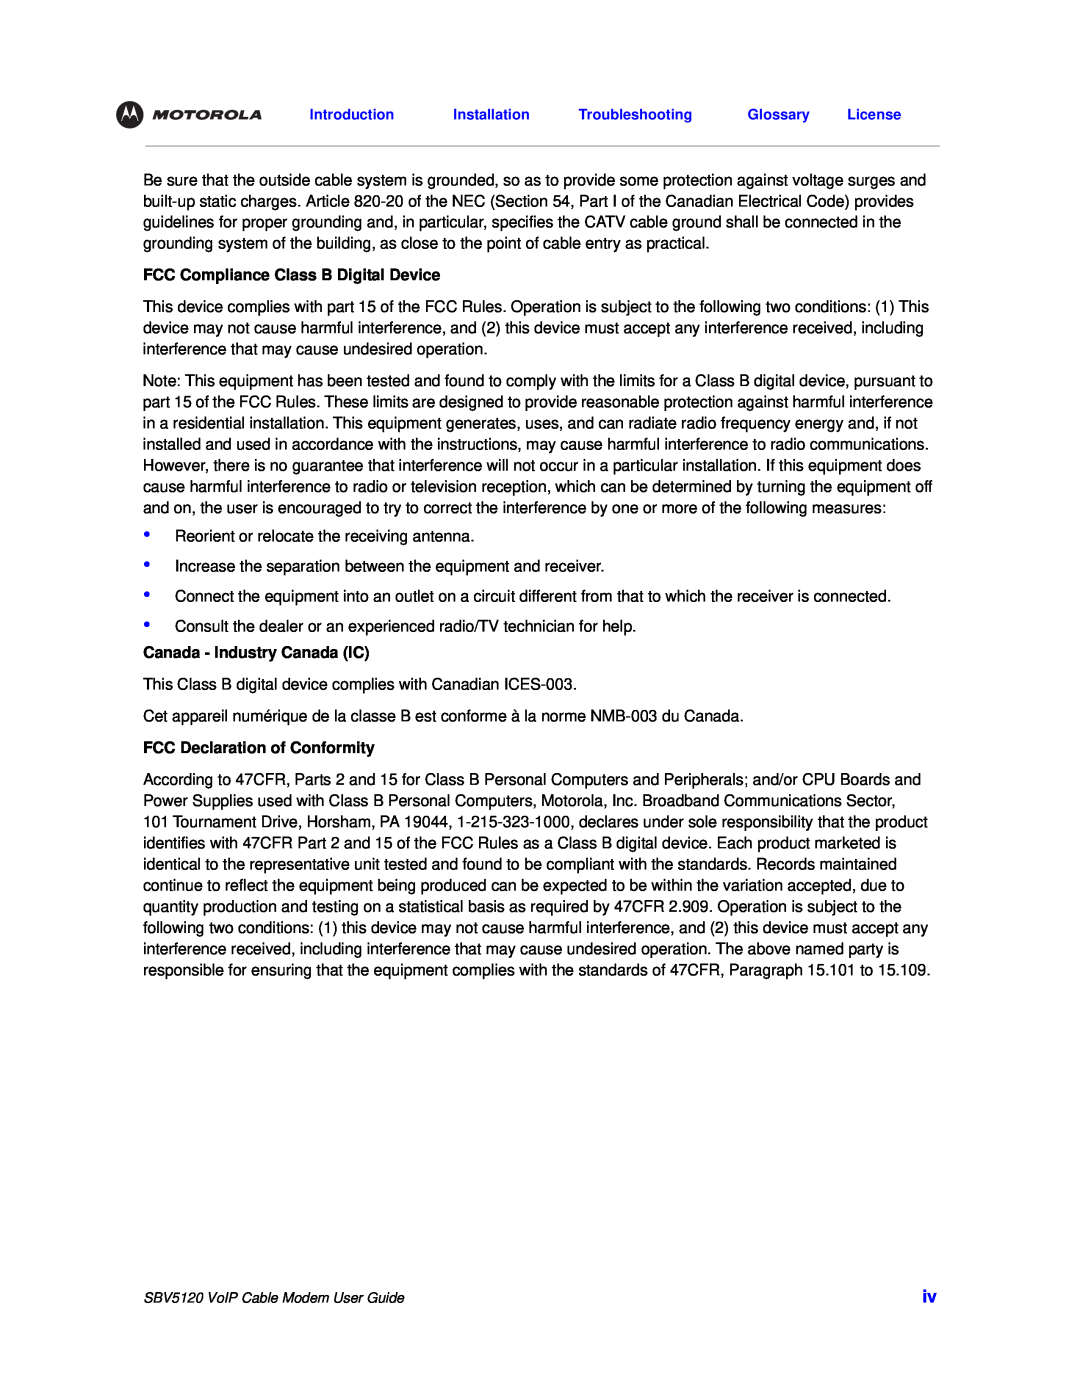 Motorola SBV5120 manual FCC Compliance Class B Digital Device, Canada - Industry Canada IC, FCC Declaration of Conformity 